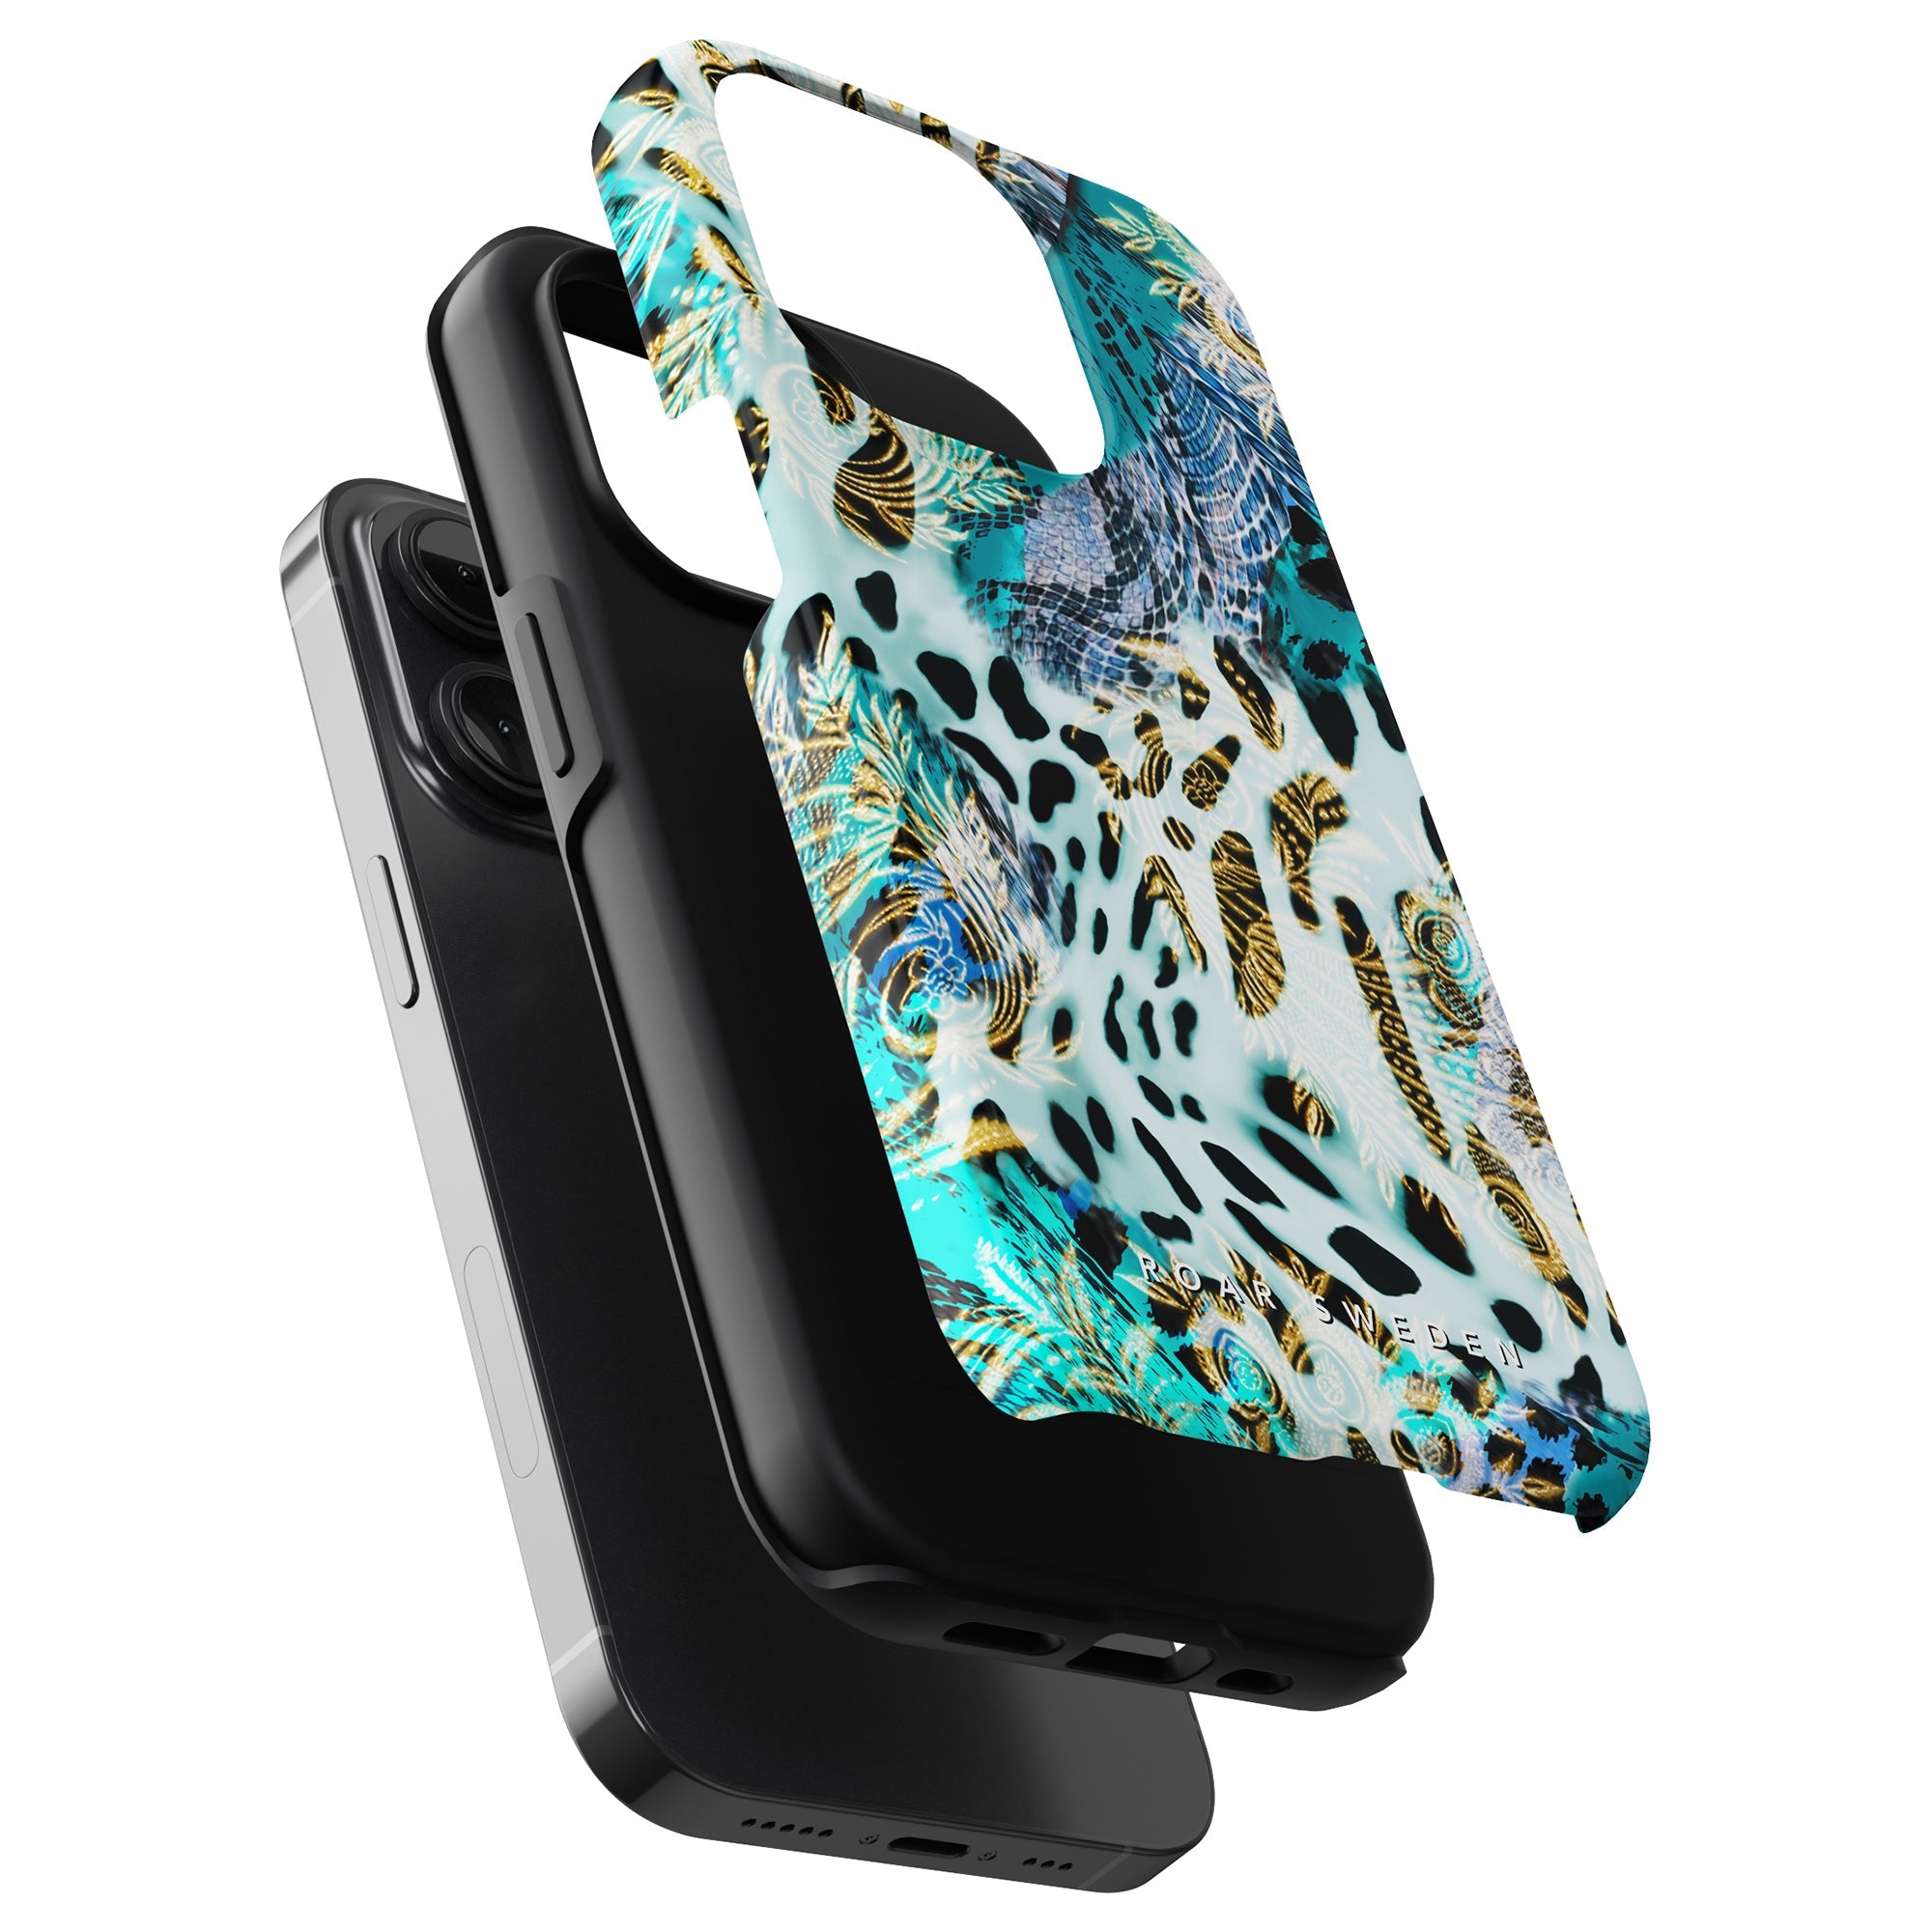 Ett livfullt Cheetah Spark - Tufft fodral leopardtryckt fodral för iPhone 11 Pro.